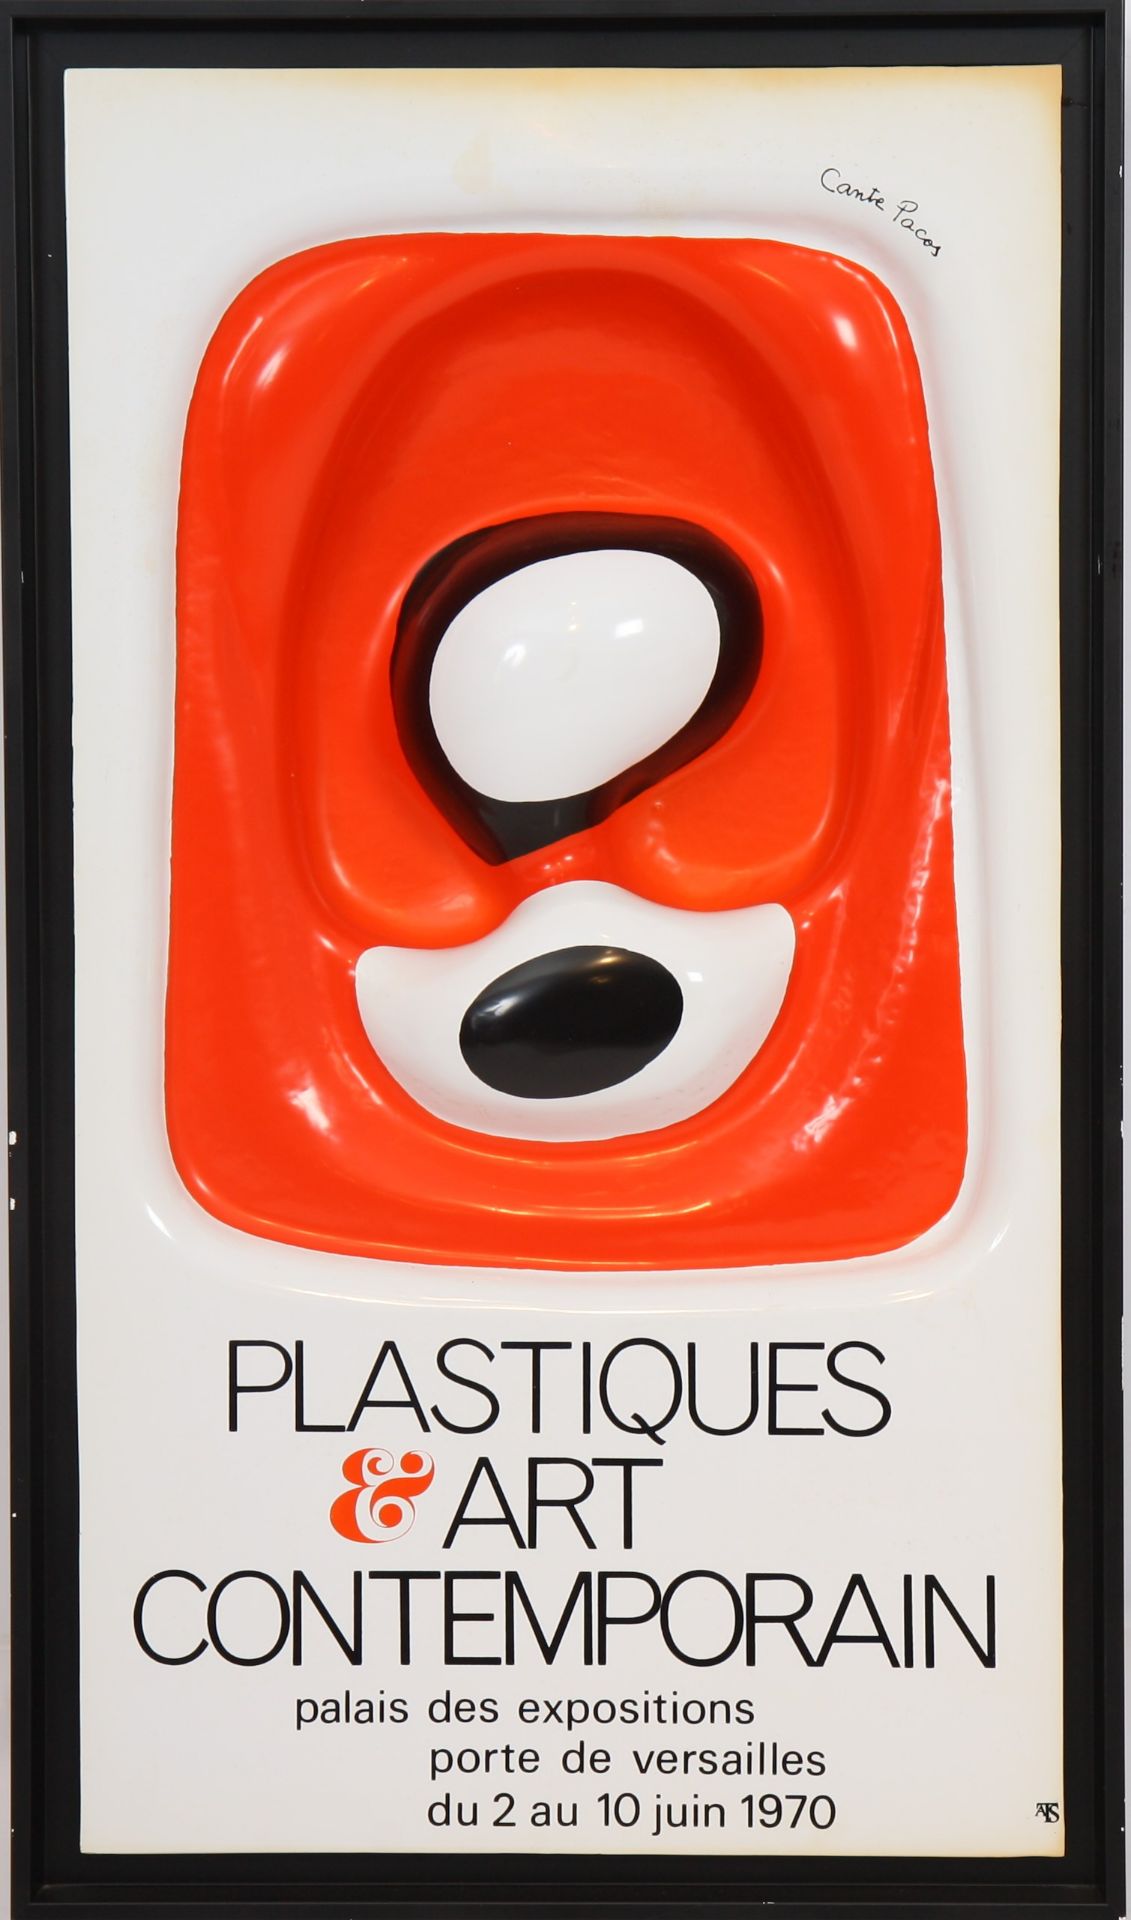 ENSEIGNE EN PLASTIQUE MOULE DE CANTE PACOS "PLASTIQUES & ART CONTEMPORAIN palais des [...]